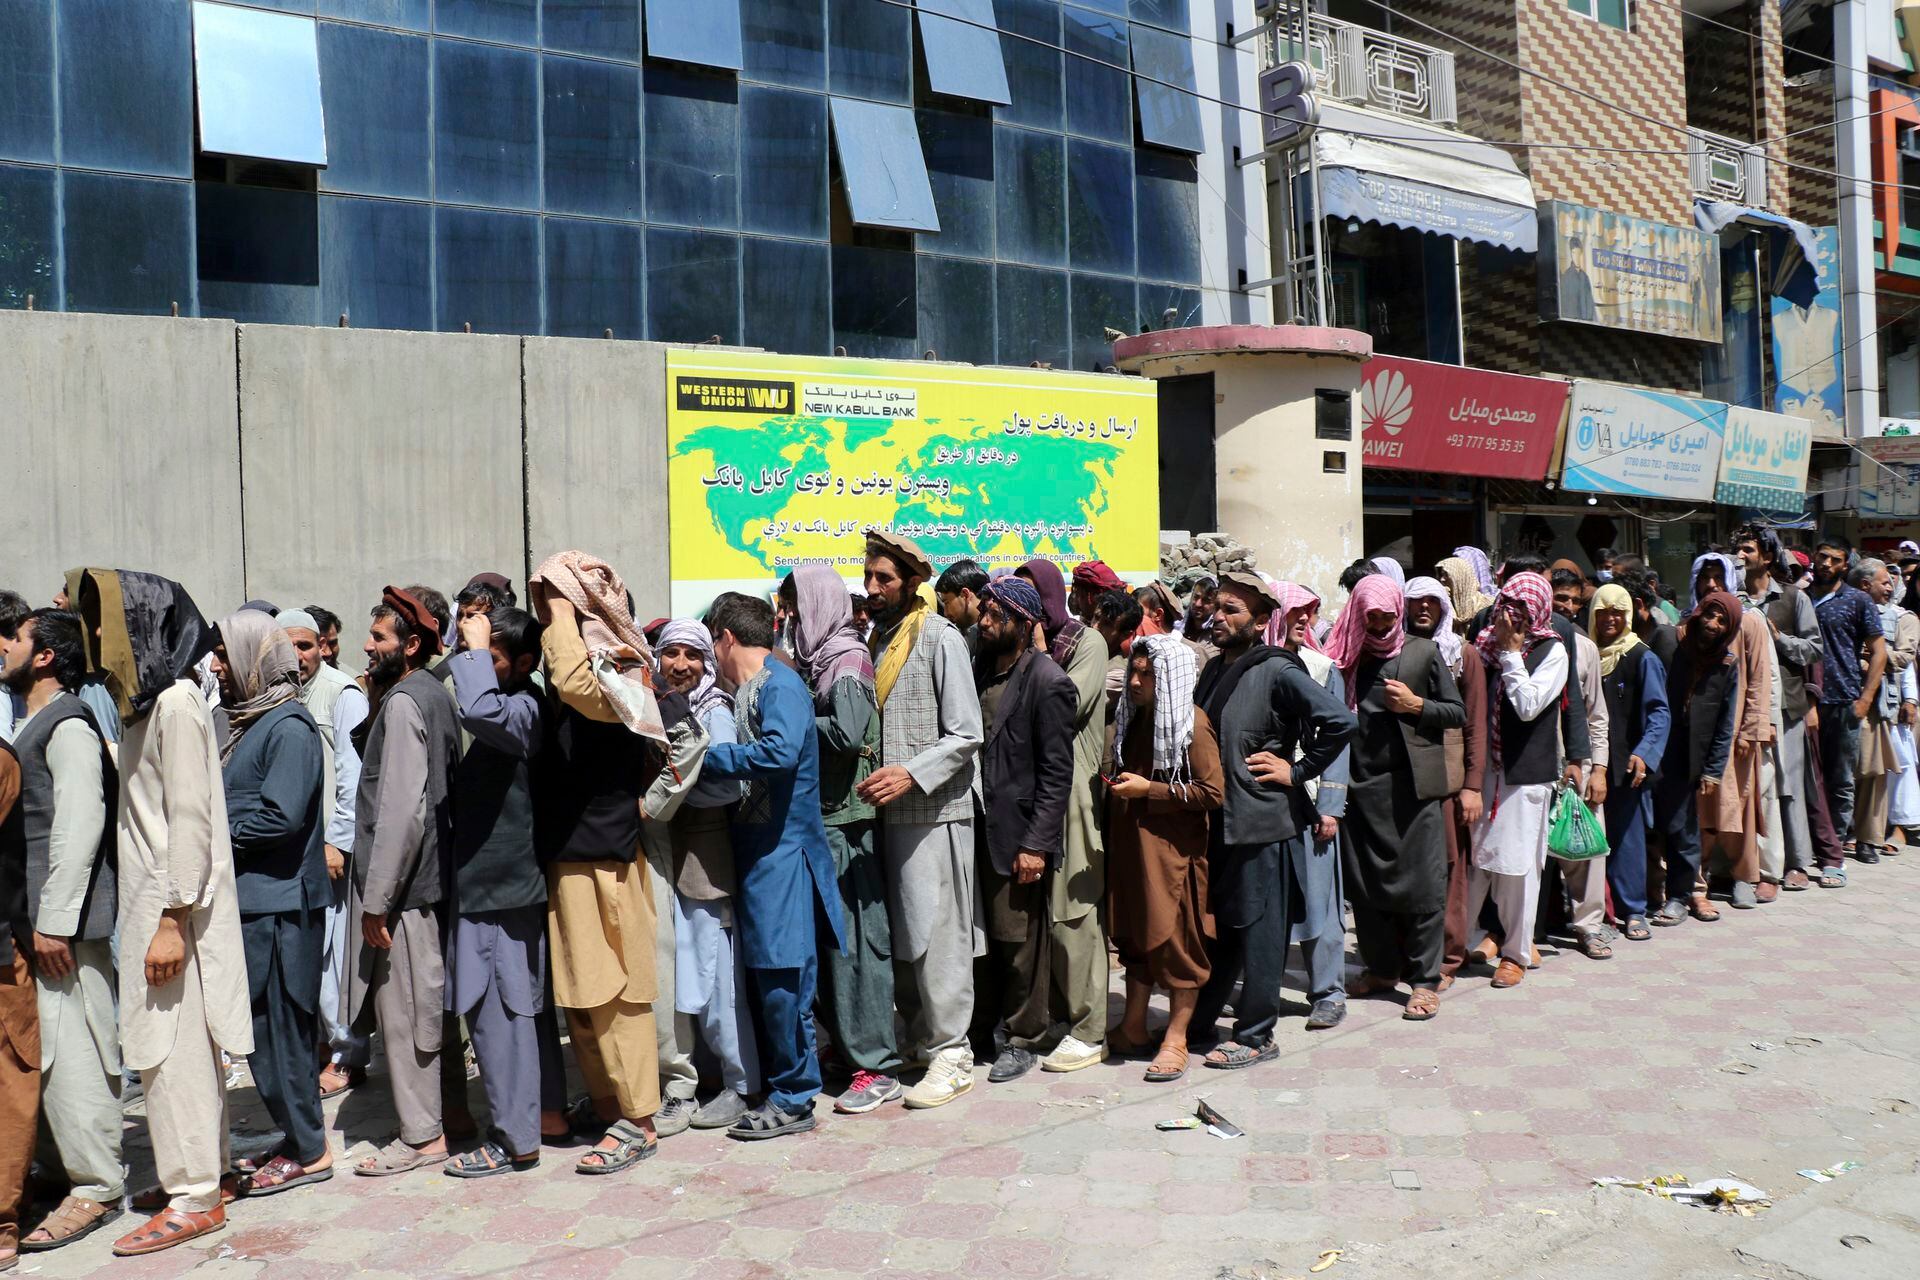 Afganos esperan frente al Kabul Bank, en Kabul. Los talibanes recuperaron el control de Afganistán casi 20 años después de que fueron derrocados en una invasión liderada por Estados Unidos tras los ataques del 11 de septiembre. Su regreso al poder ha empujado a muchos afganos a huir, por temor a represalias de los combatientes o un regreso al brutal gobierno que impusieron la última vez que gobernaron el país